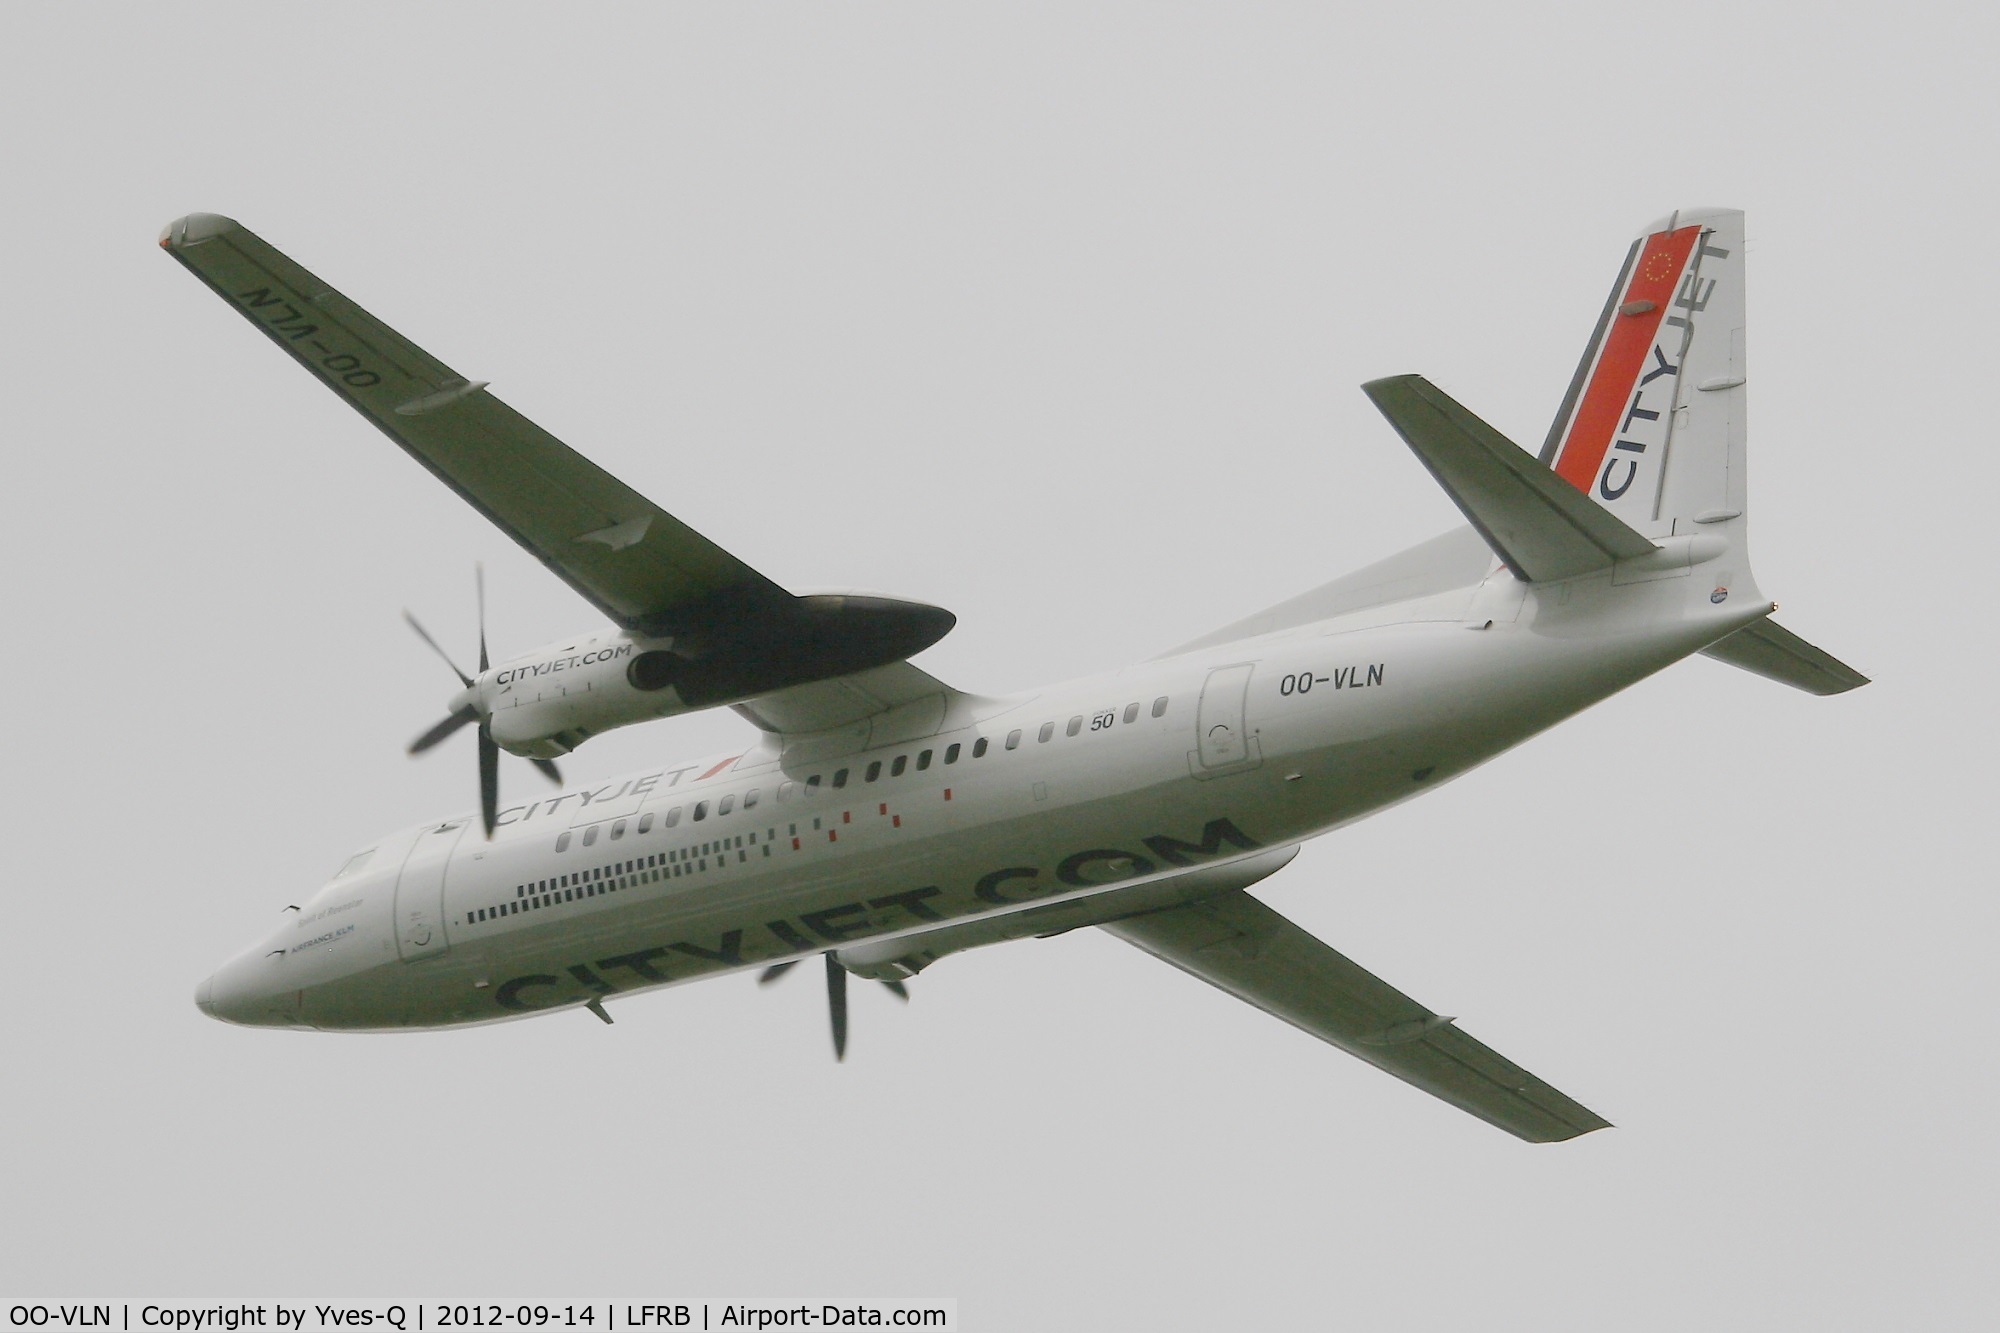 OO-VLN, 1989 Fokker 50 C/N 20145, Fokker 50, Take off rwy 25L, Brest-Guipavas Airport (LFRB-BES)